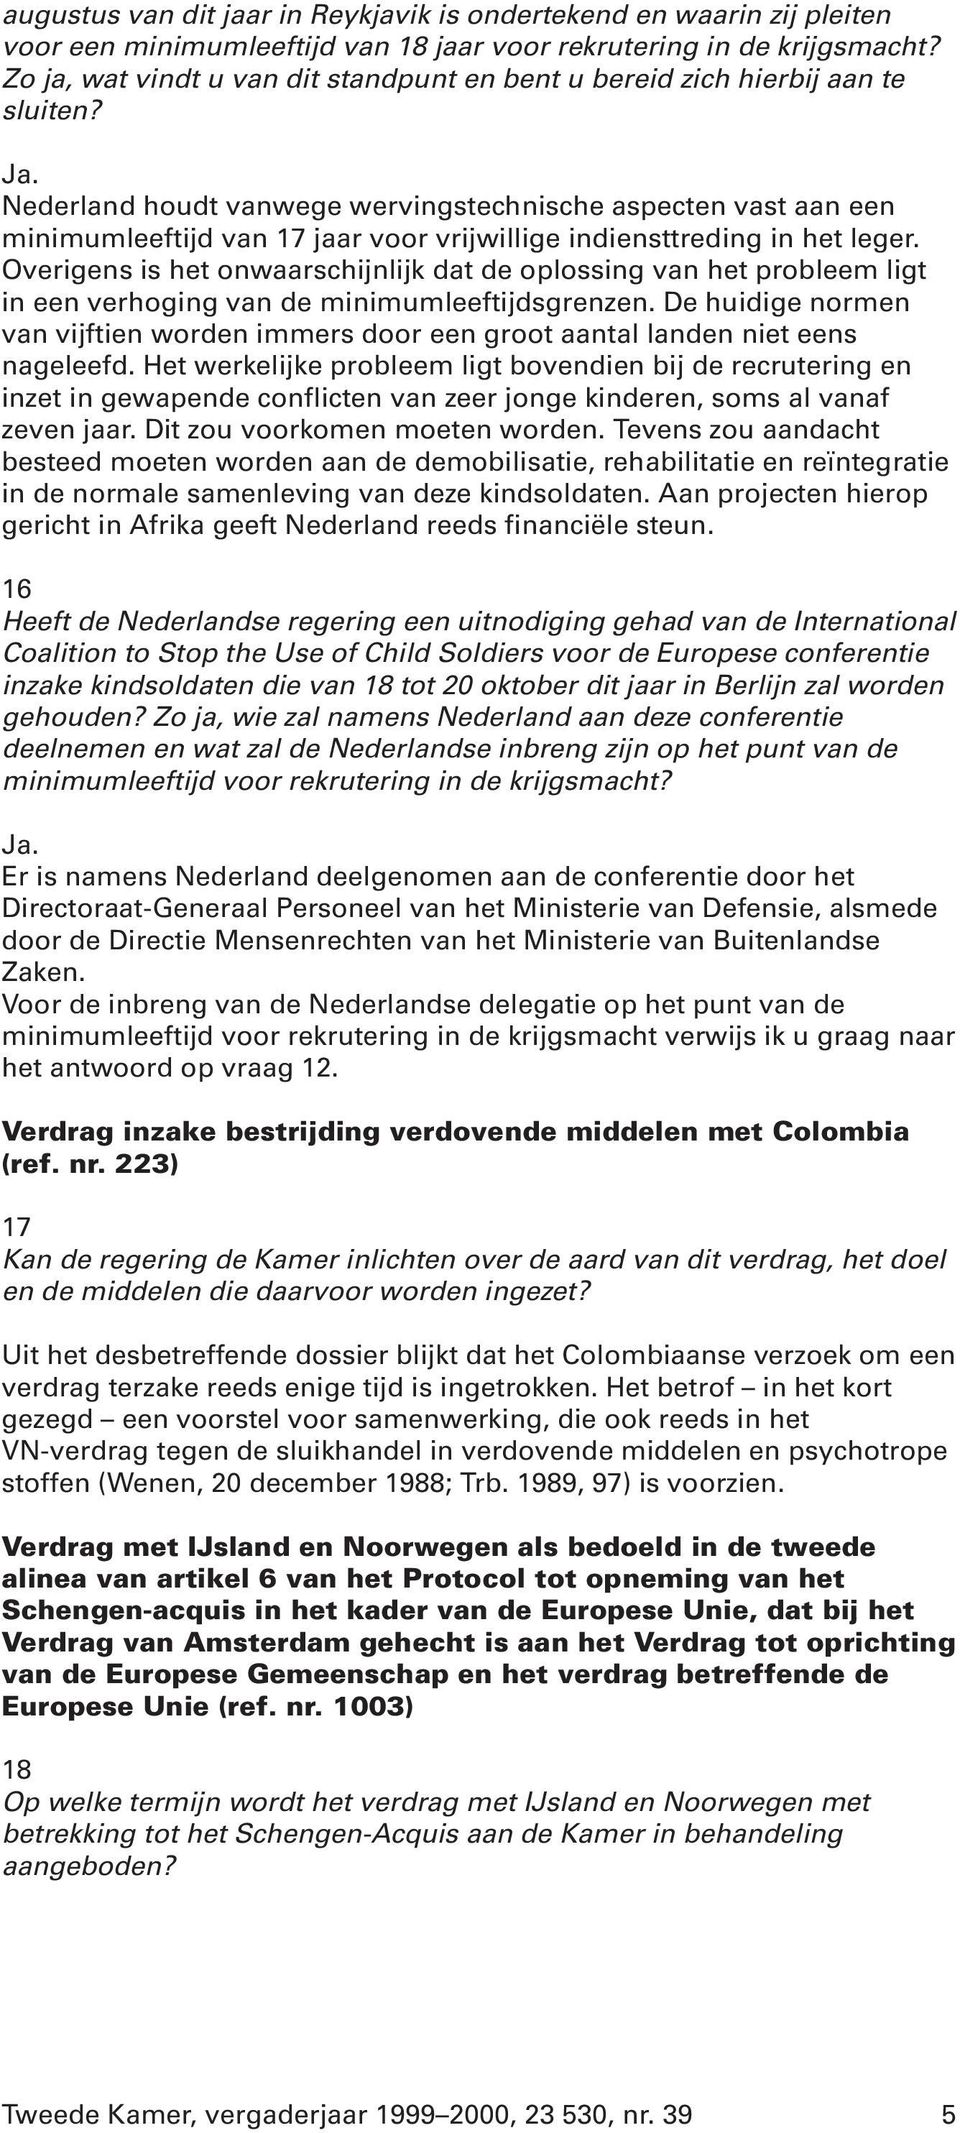 Nederland houdt vanwege wervingstechnische aspecten vast aan een minimumleeftijd van 17 jaar voor vrijwillige indiensttreding in het leger.